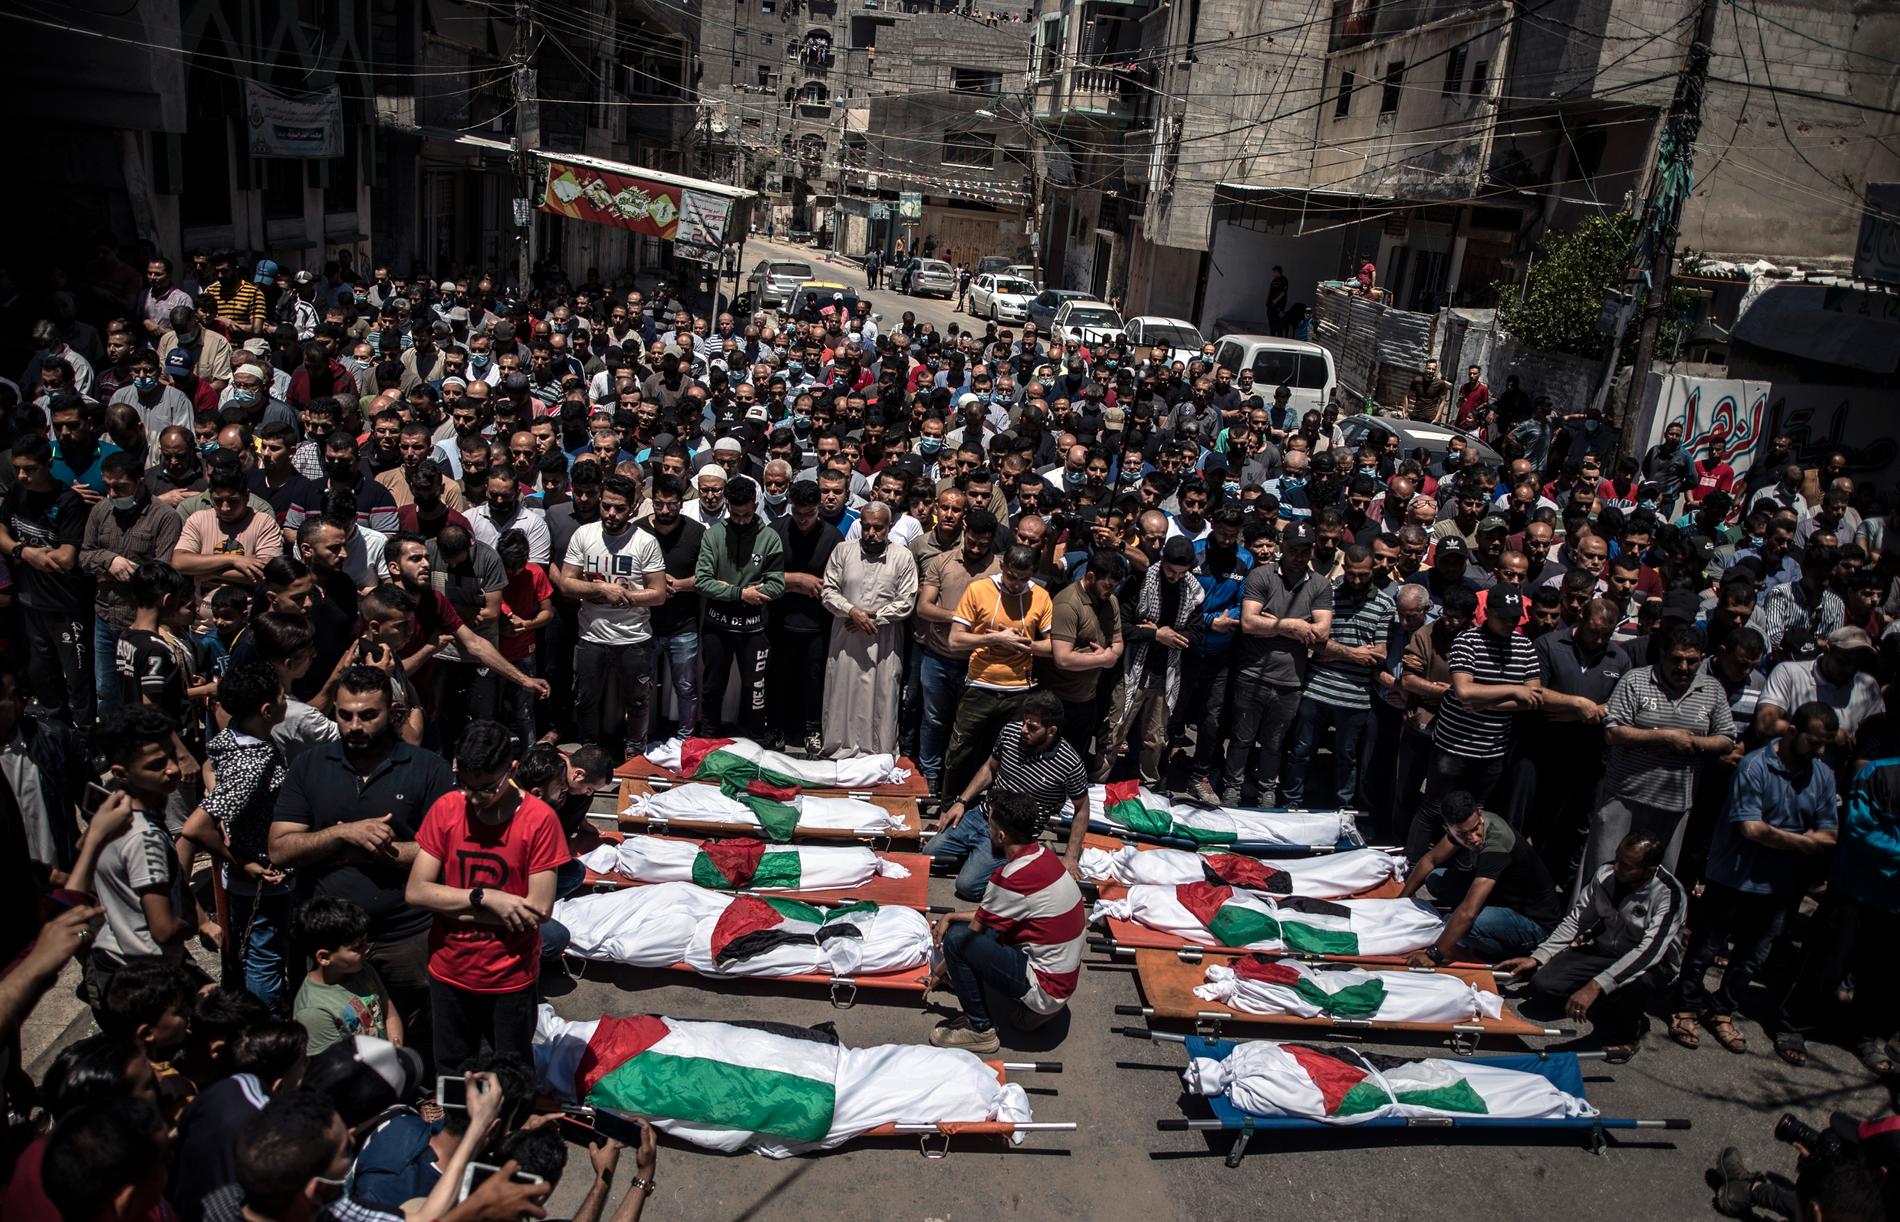 Nästan en hel familj, två kvinnor och åtta barn, dödas i lördags i en israelisk flygattack. En liten pojke överlevde – i sin döda mammas armar, enligt uppgifter. Hundratals palestinier samlades för begravningen.  